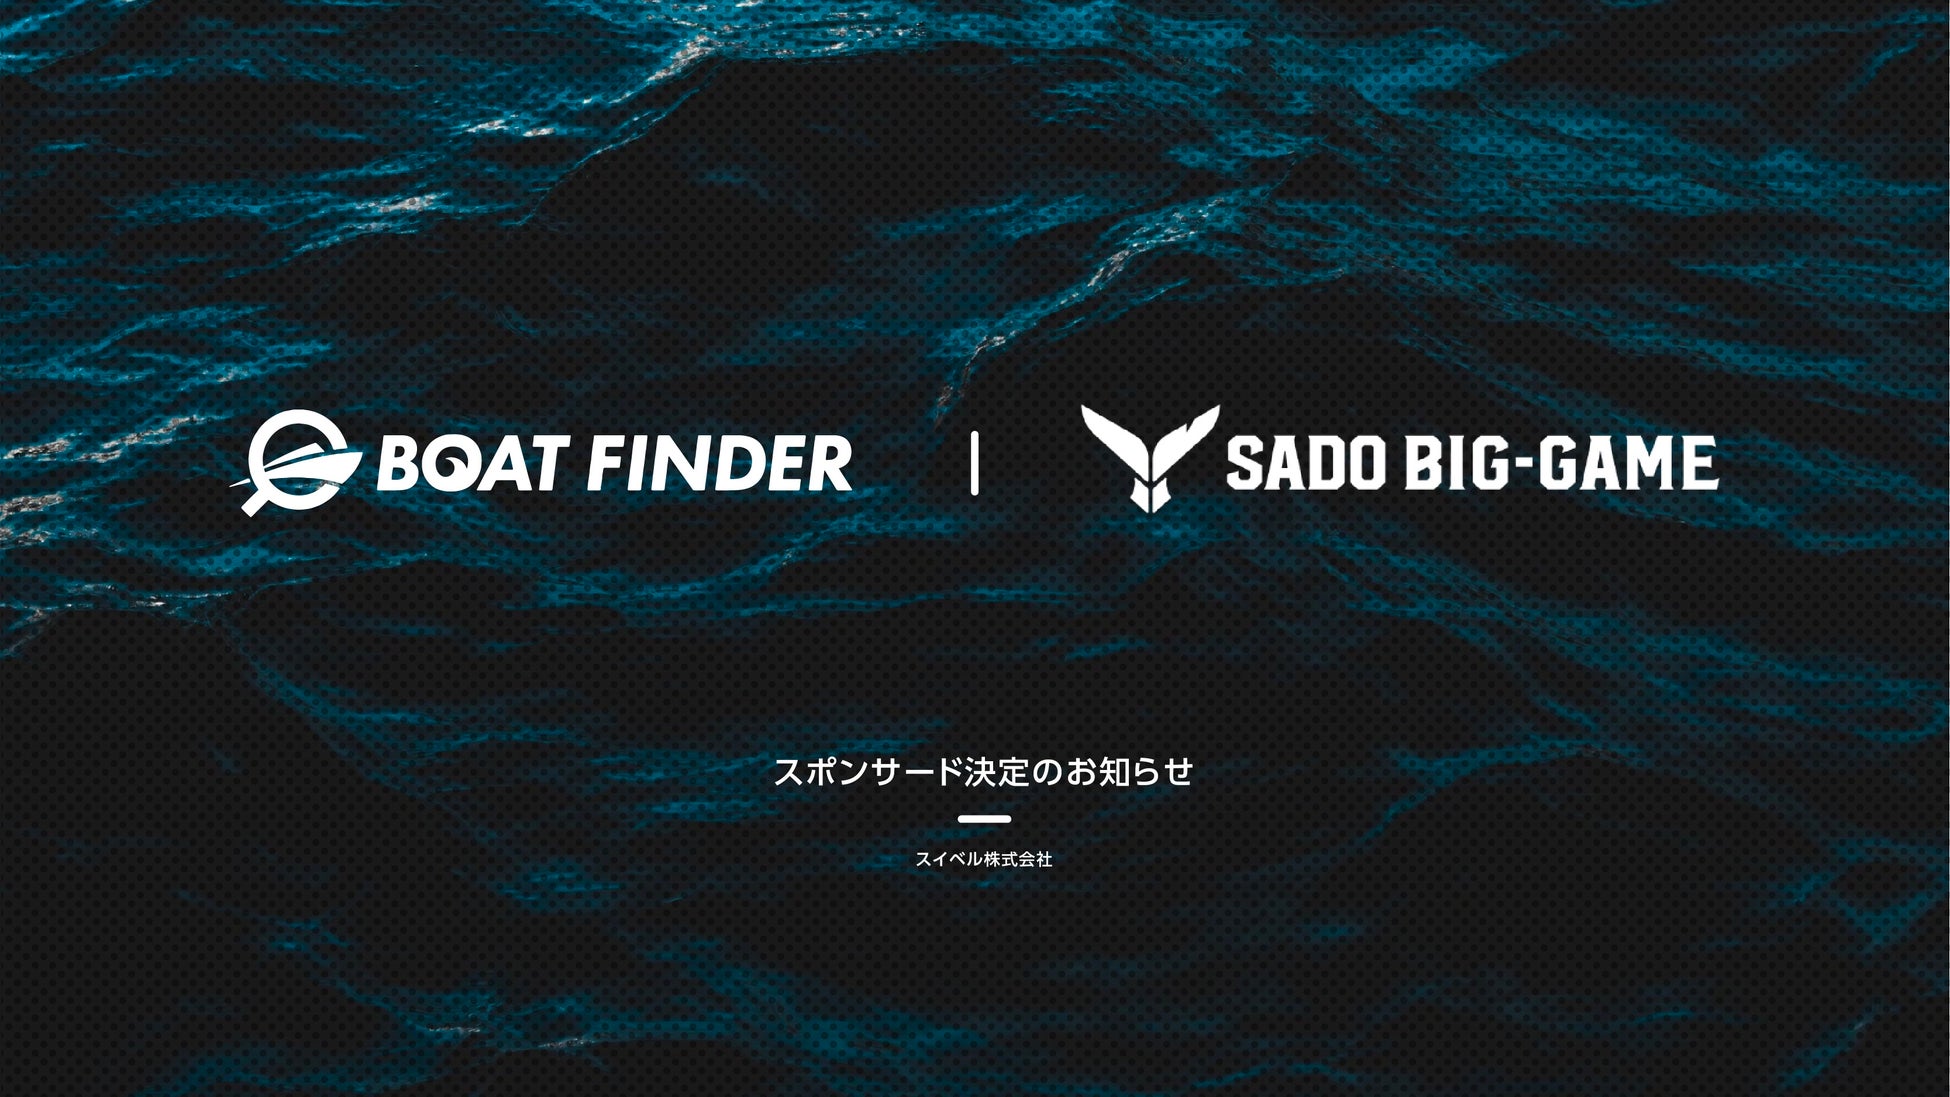 釣り船データベース「BOAT FINDER(ボートファインダー)」が「第4回佐渡ビッグゲーム FishRankerカップ」へ協賛決定